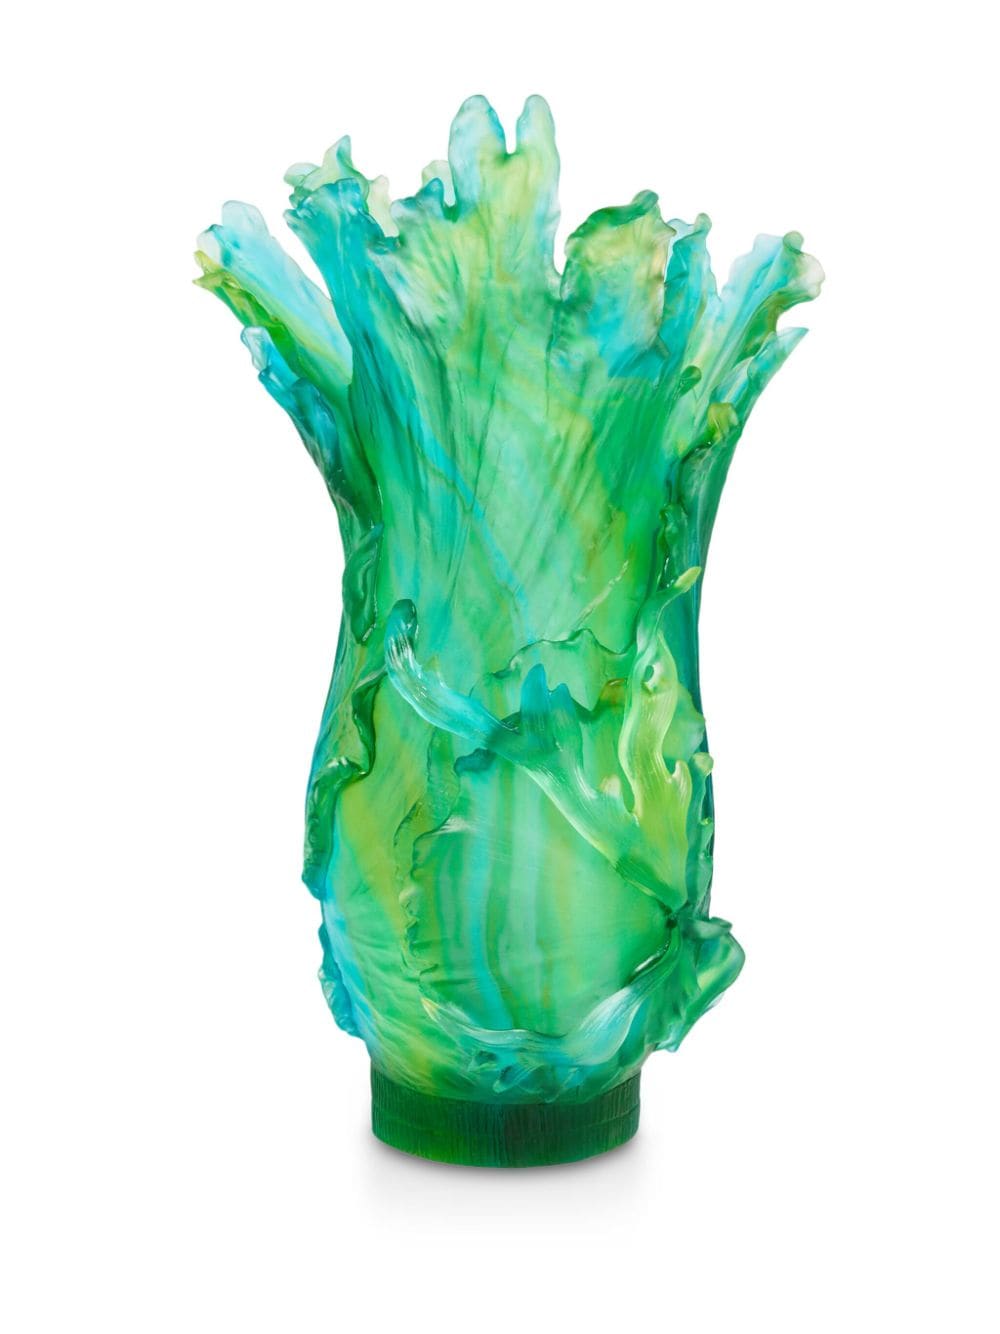 Daum Magnum Borneo crystal vase (60cm) - Groen